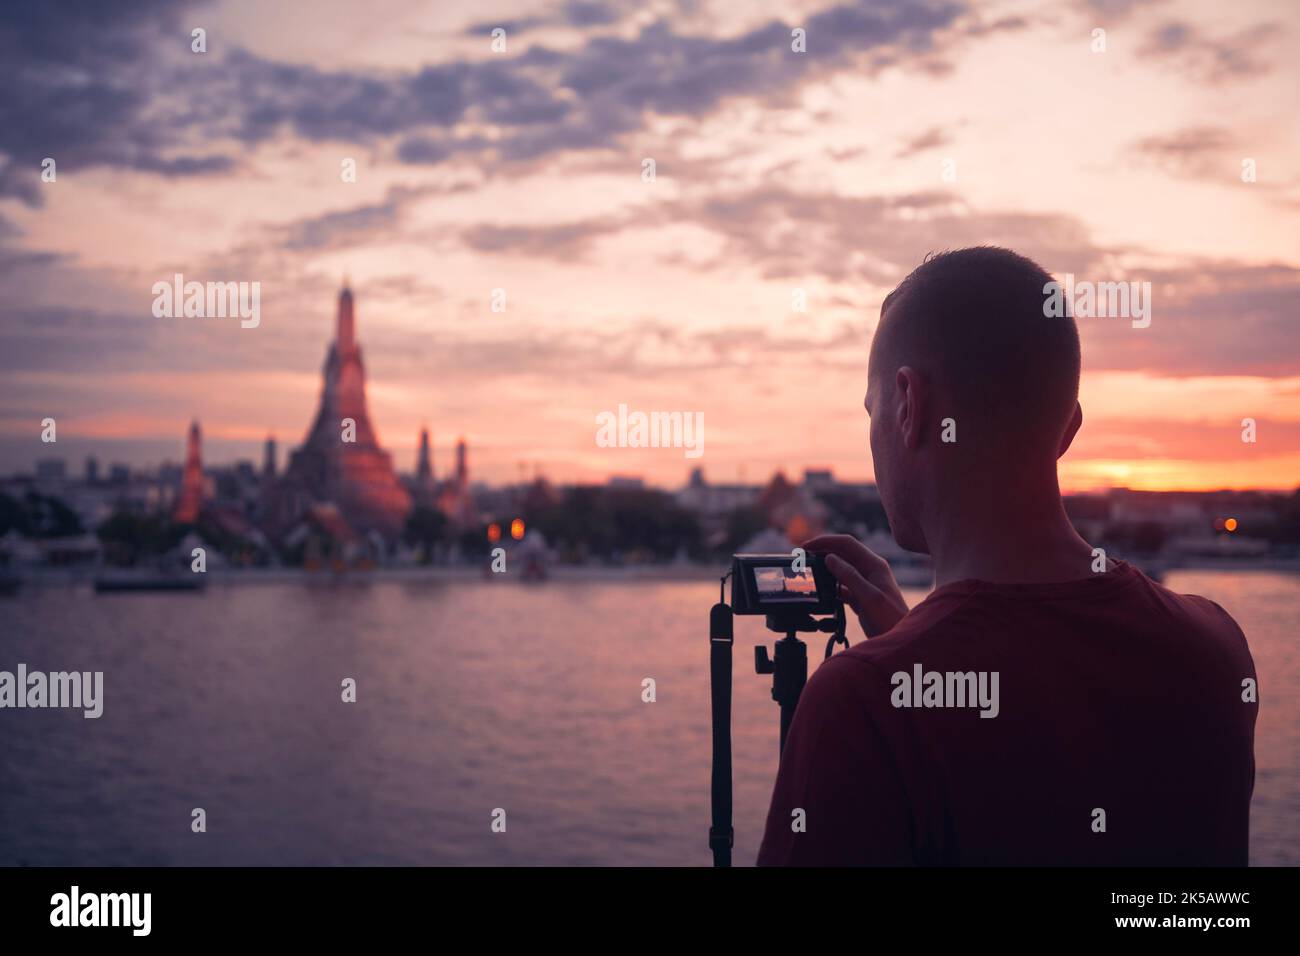 Homme photographiant le paysage urbain au coucher du soleil. Tourisme avec appareil photo sur trépied contre le temple de Wat Arun à Bangkok, Thaïlande. Banque D'Images